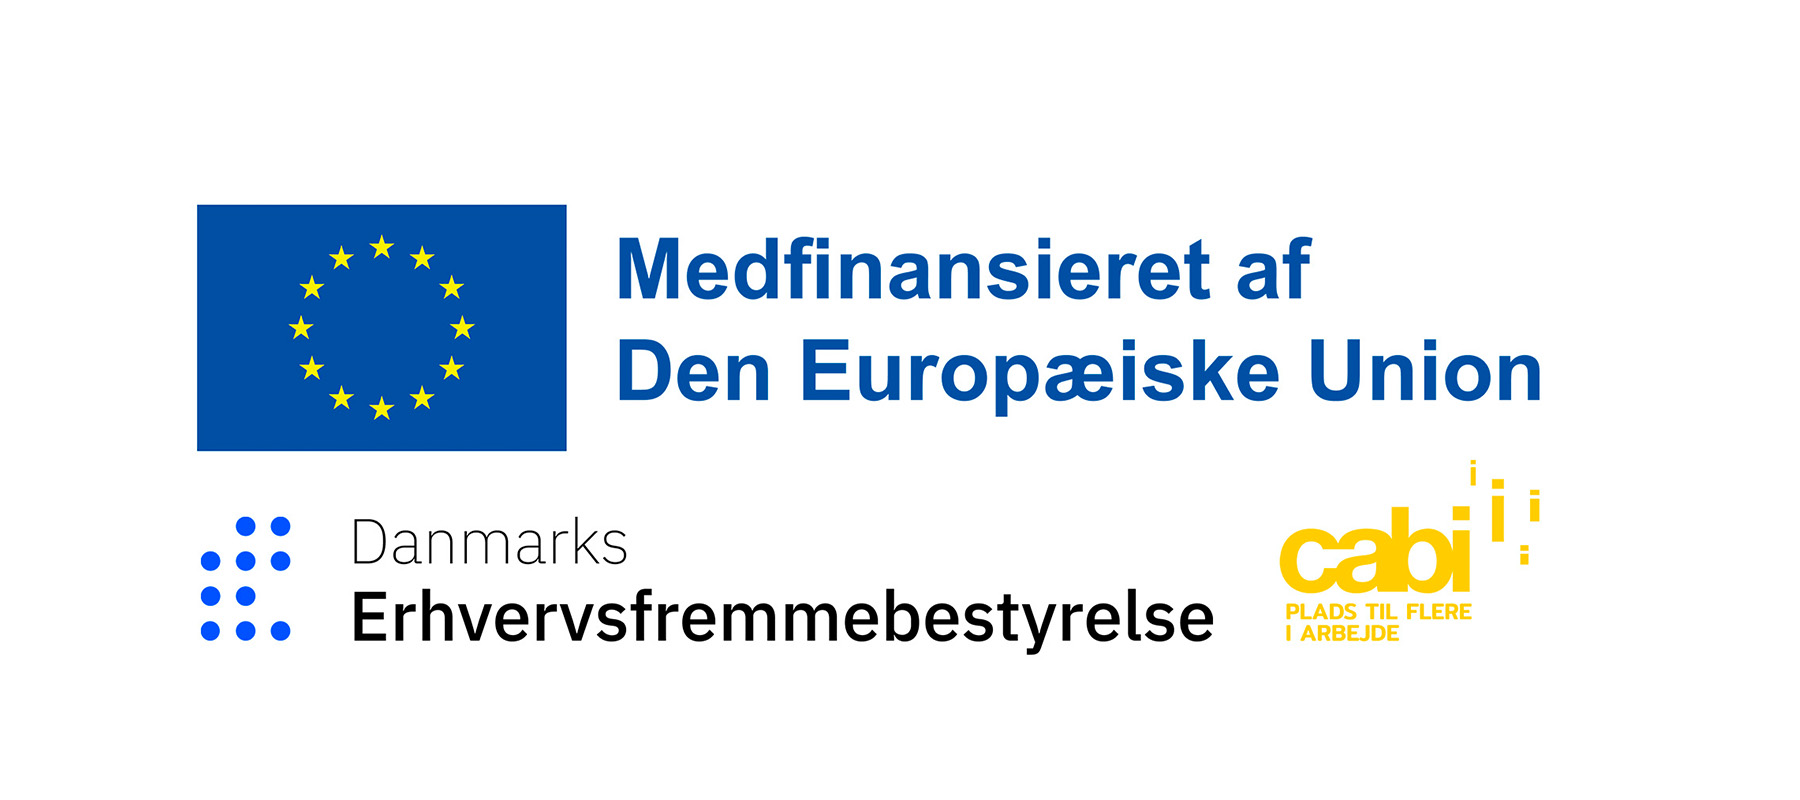 Logoer: EU, Danmarks Erhvervsfremmebestyrelse og Cabi